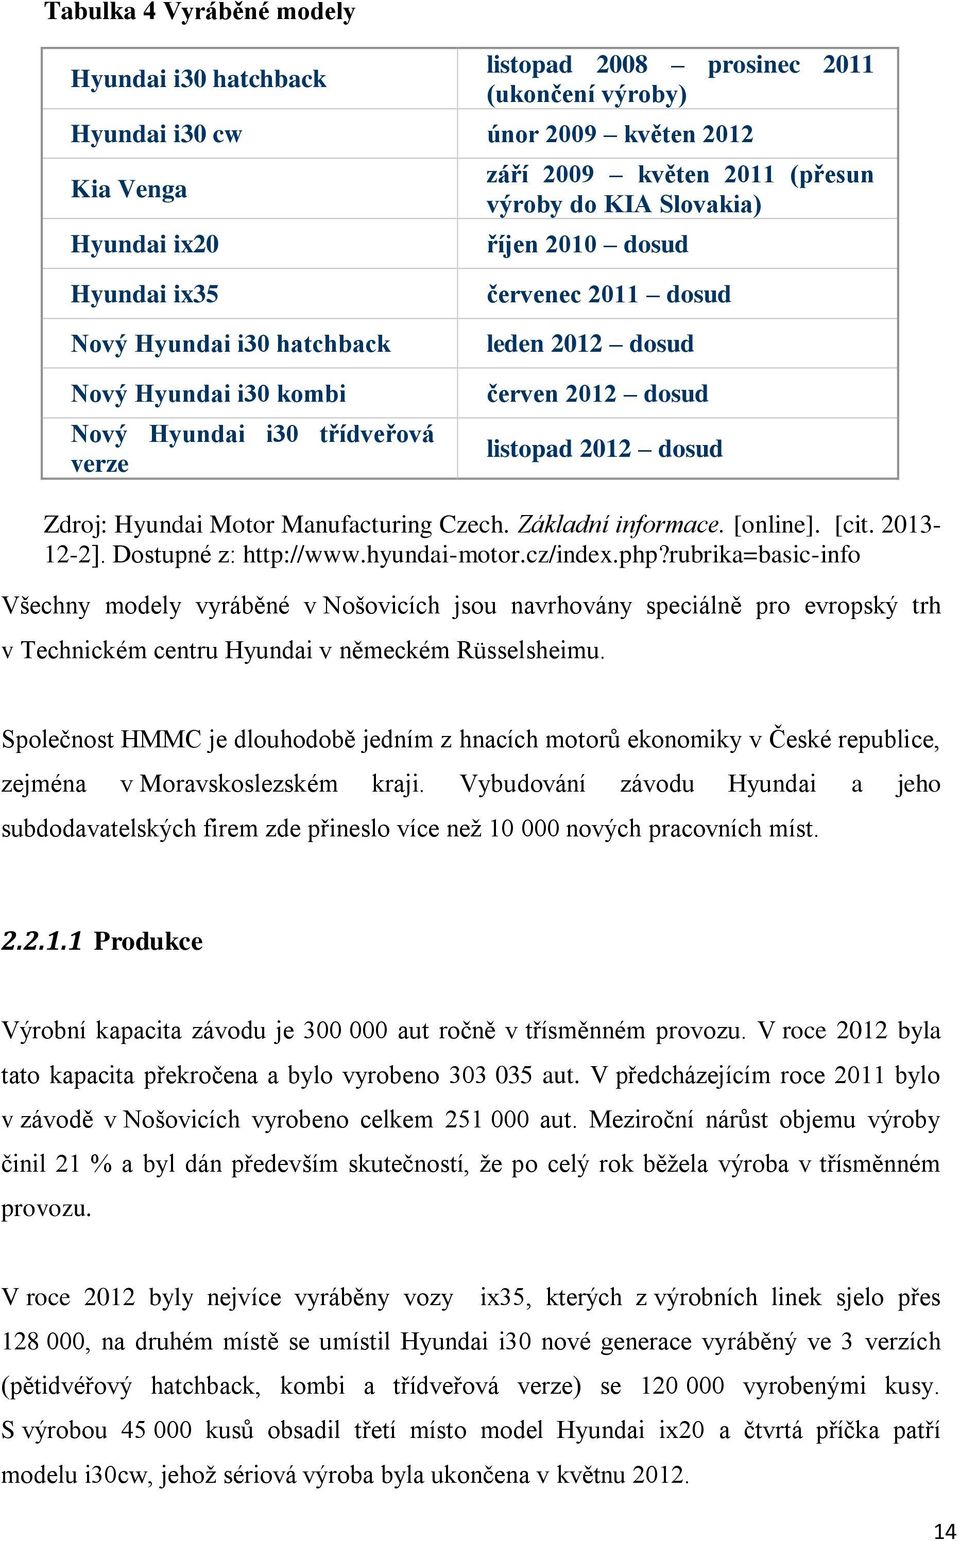 Zdroj: Hyundai Motor Manufacturing Czech. Základní informace. [online]. [cit. 2013-12-2]. Dostupné z: http://www.hyundai-motor.cz/index.php?